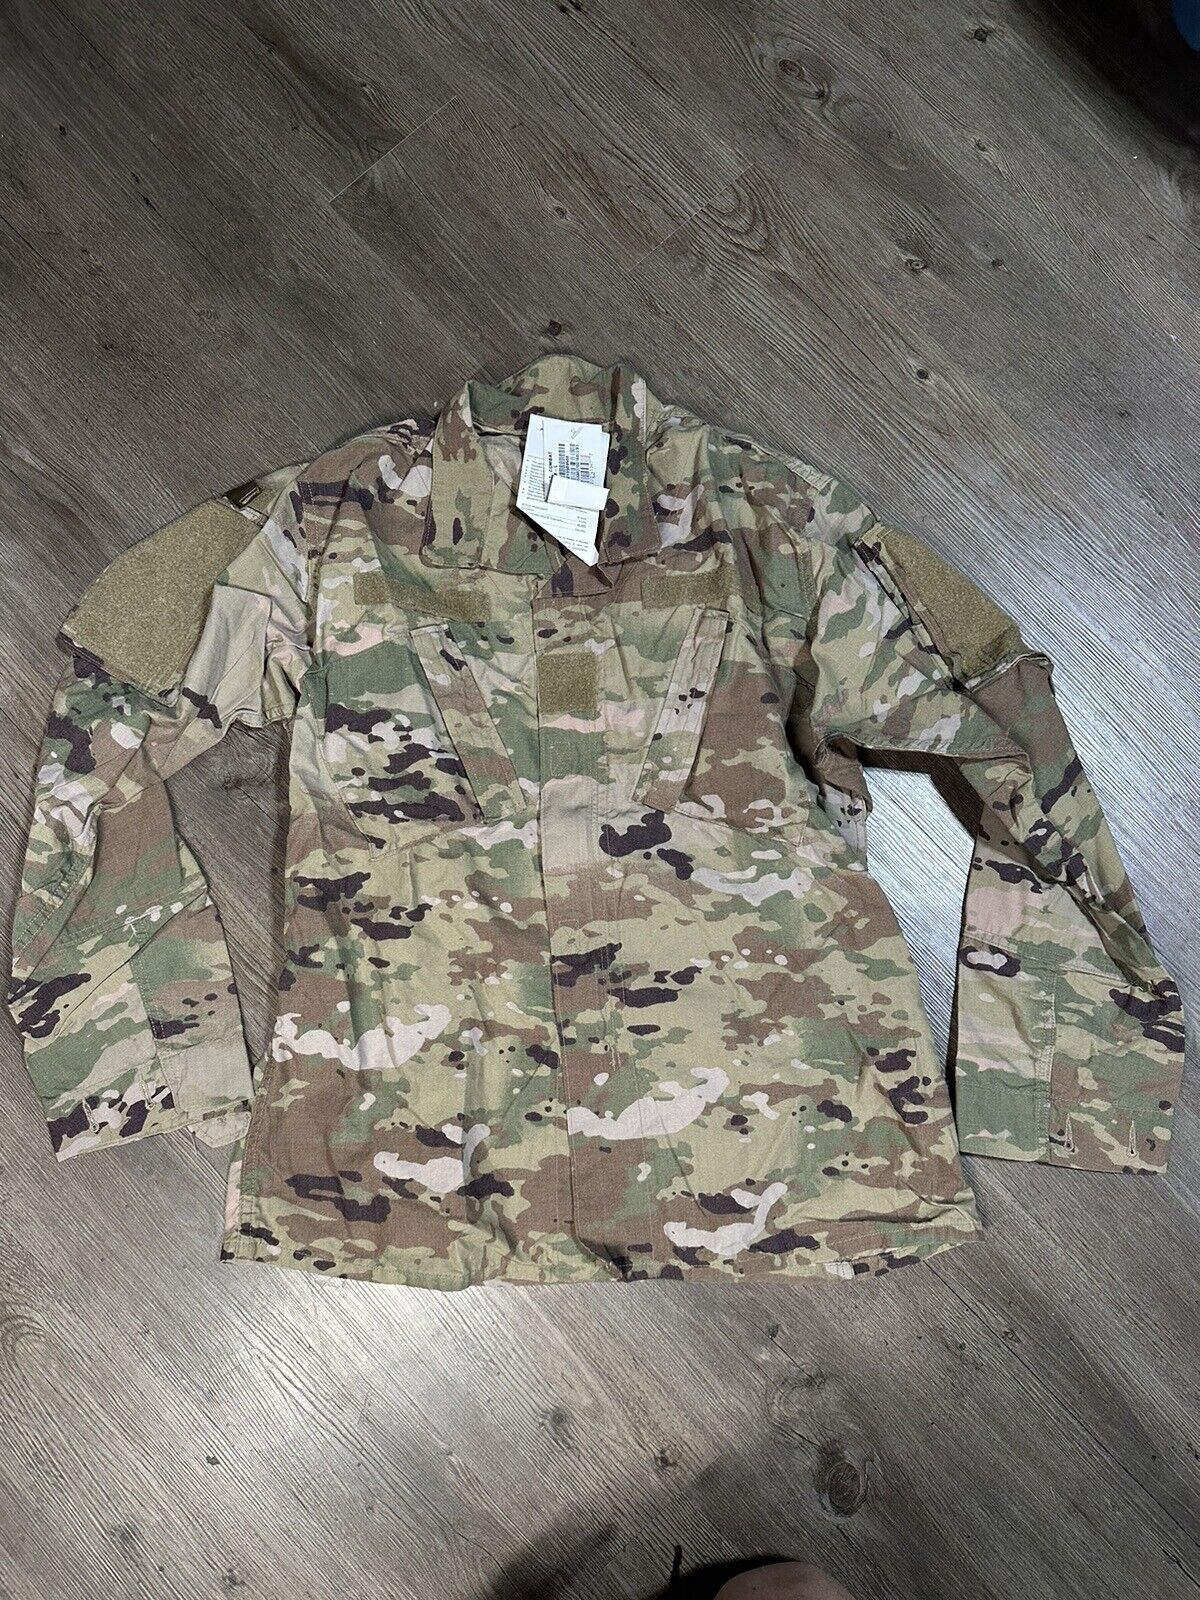 US Military OCP Combat Uniform Coat - 8415-01-598-9988 - Medium Long - New FR